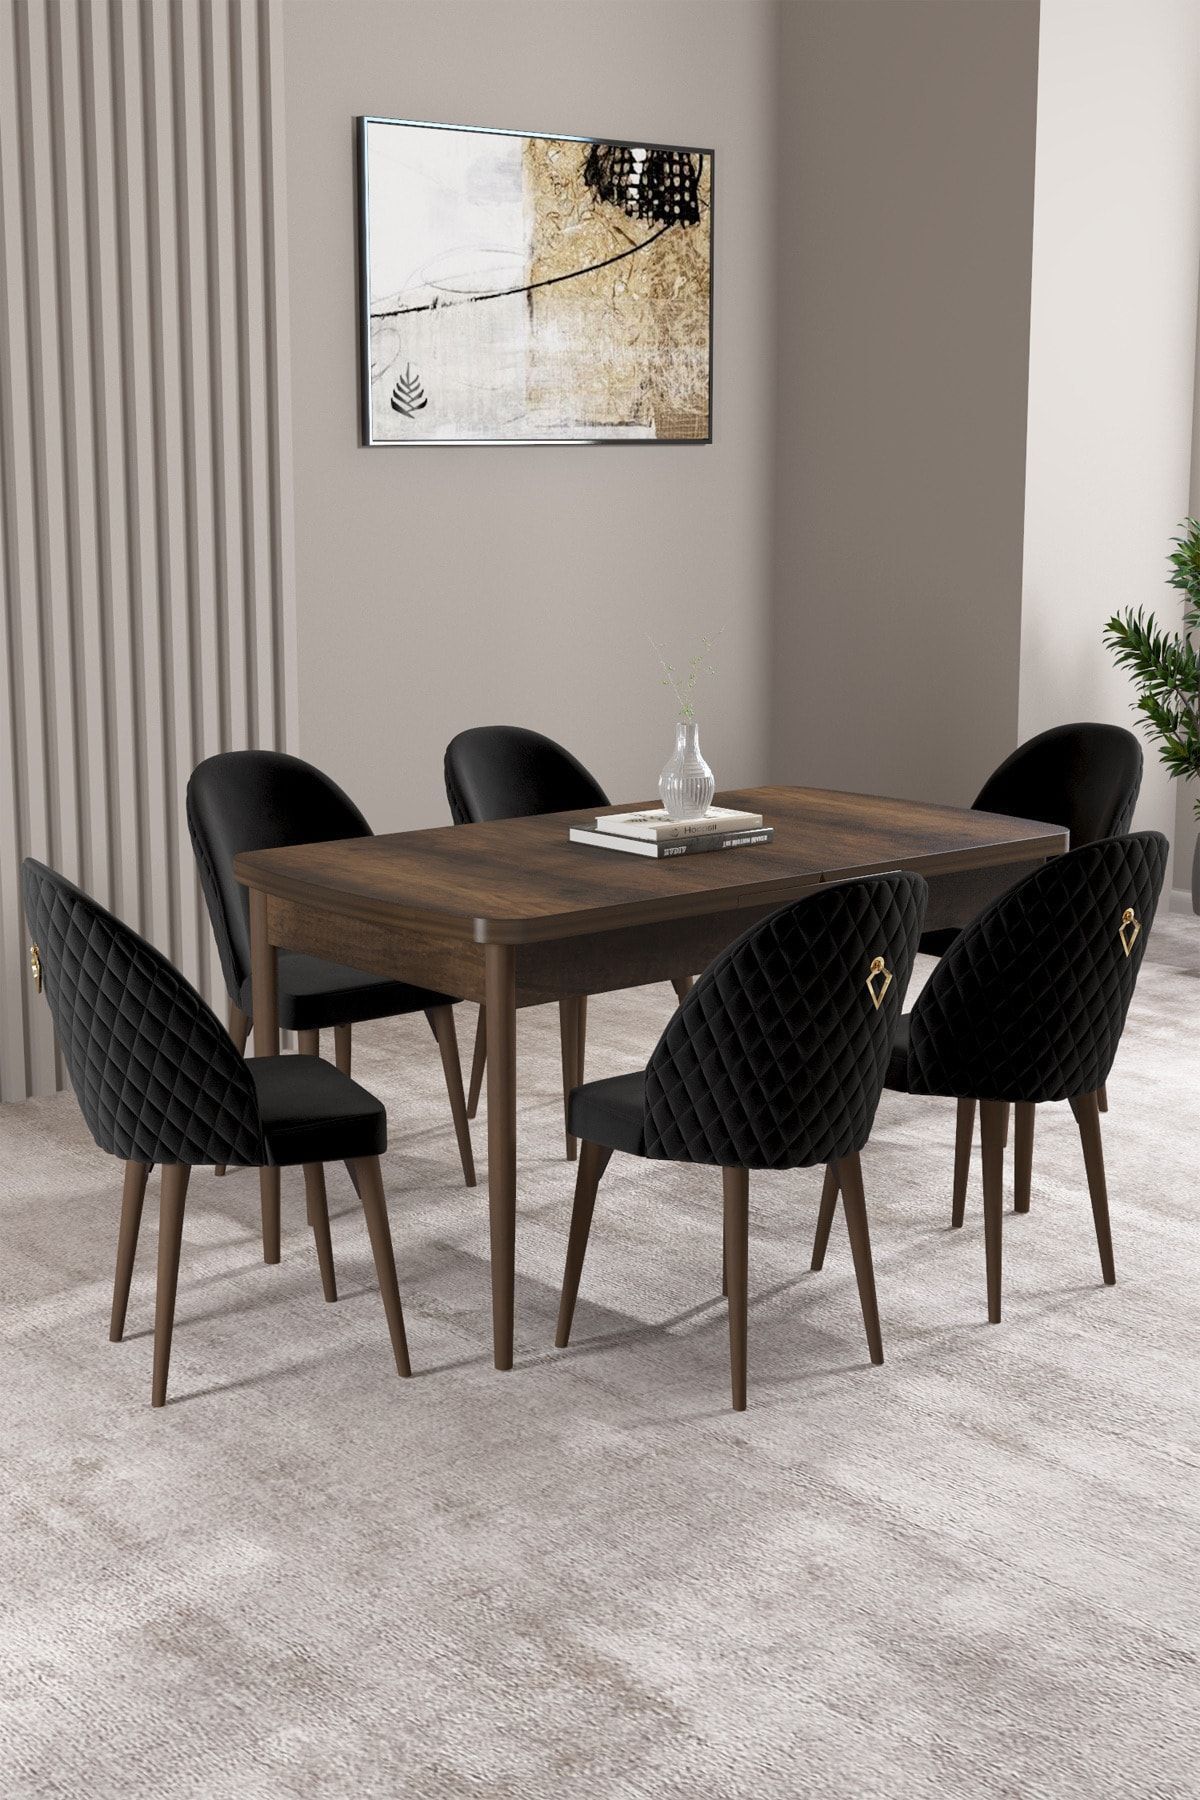 hoopsii Milas Barok Desen 80x132 Mdf Açılabilir Yemek Masası Takımı 6 Adet Sandalye